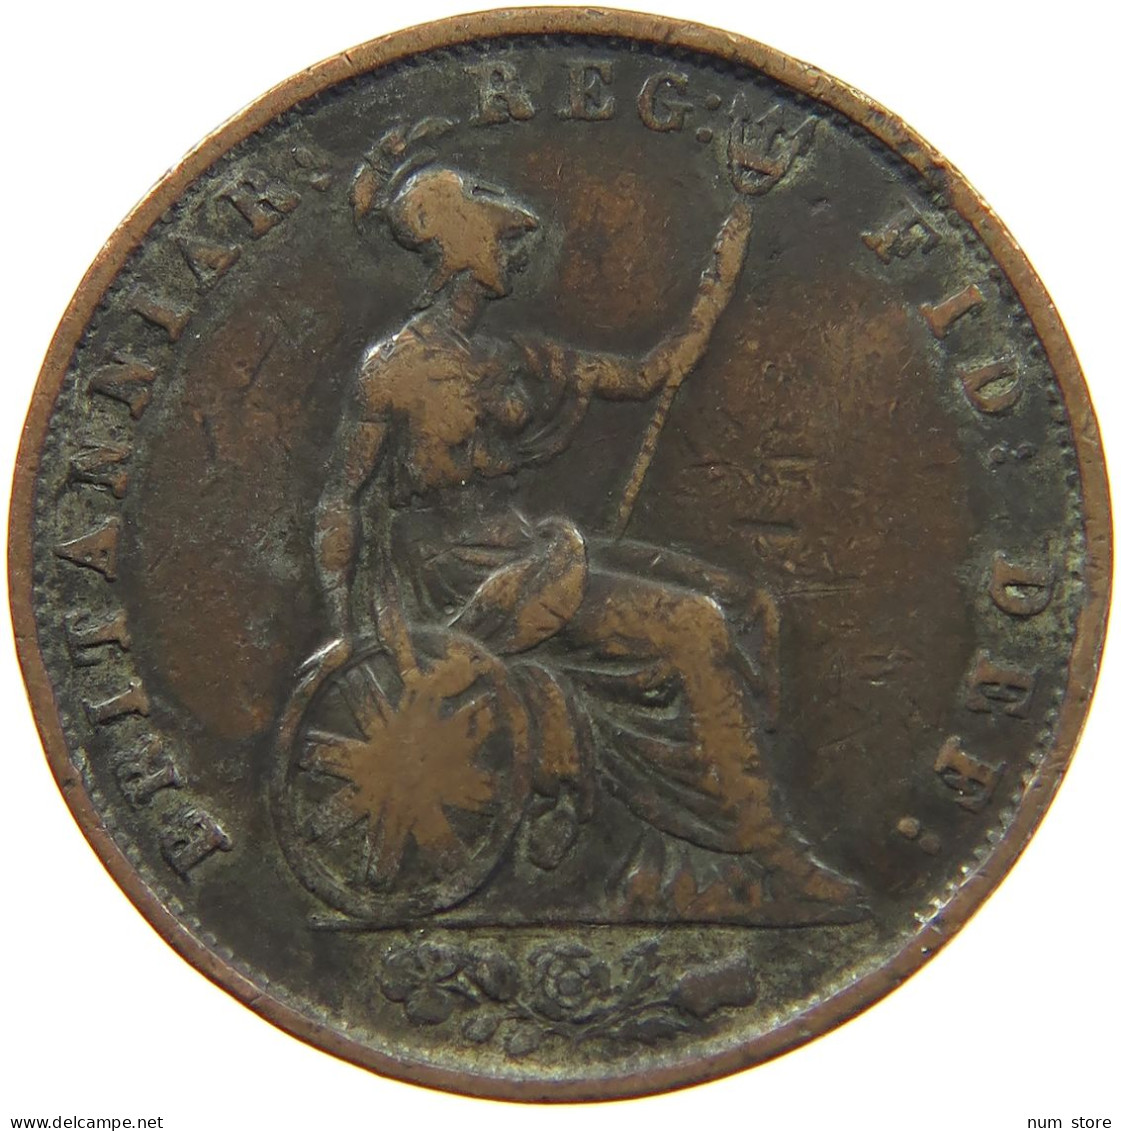 GREAT BRITAIN HALFPENNY 1853 Victoria 1837-1901 #c020 0215 - C. 1/2 Penny